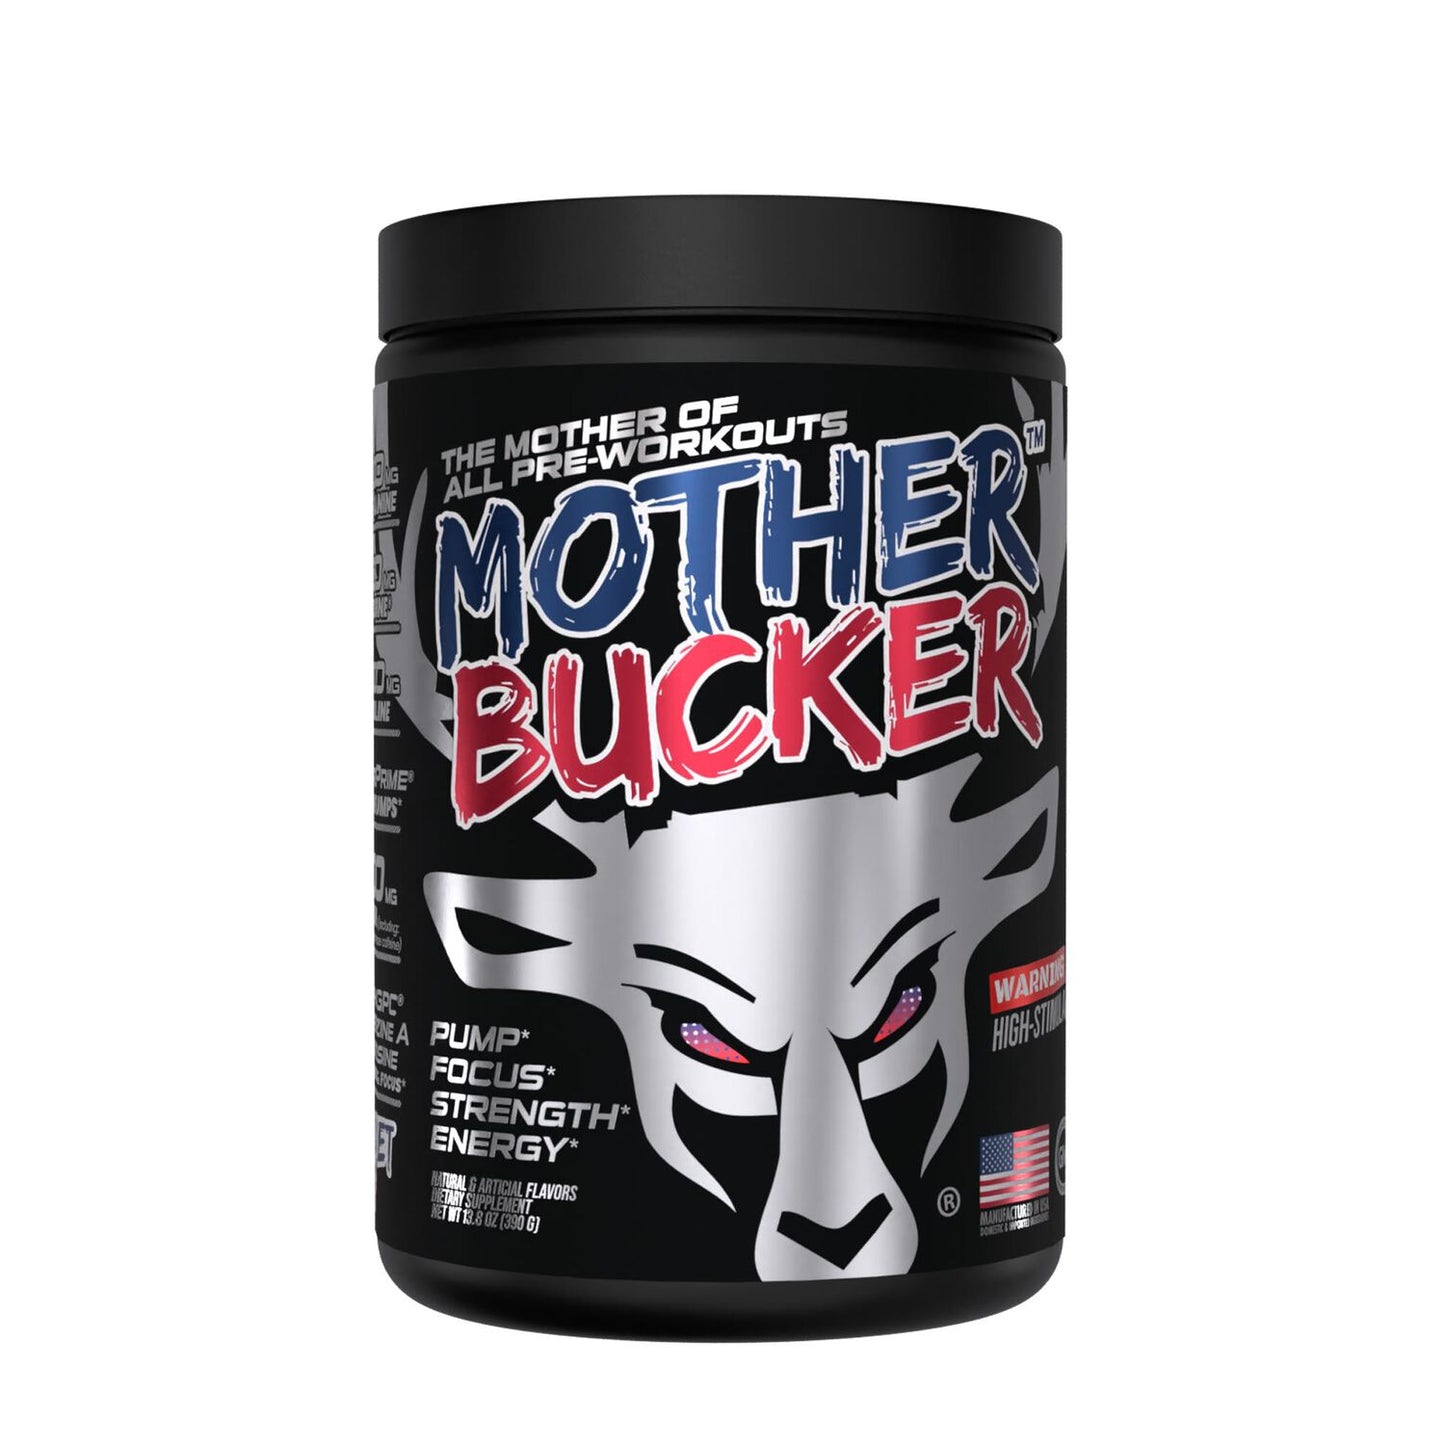 MotherBucker